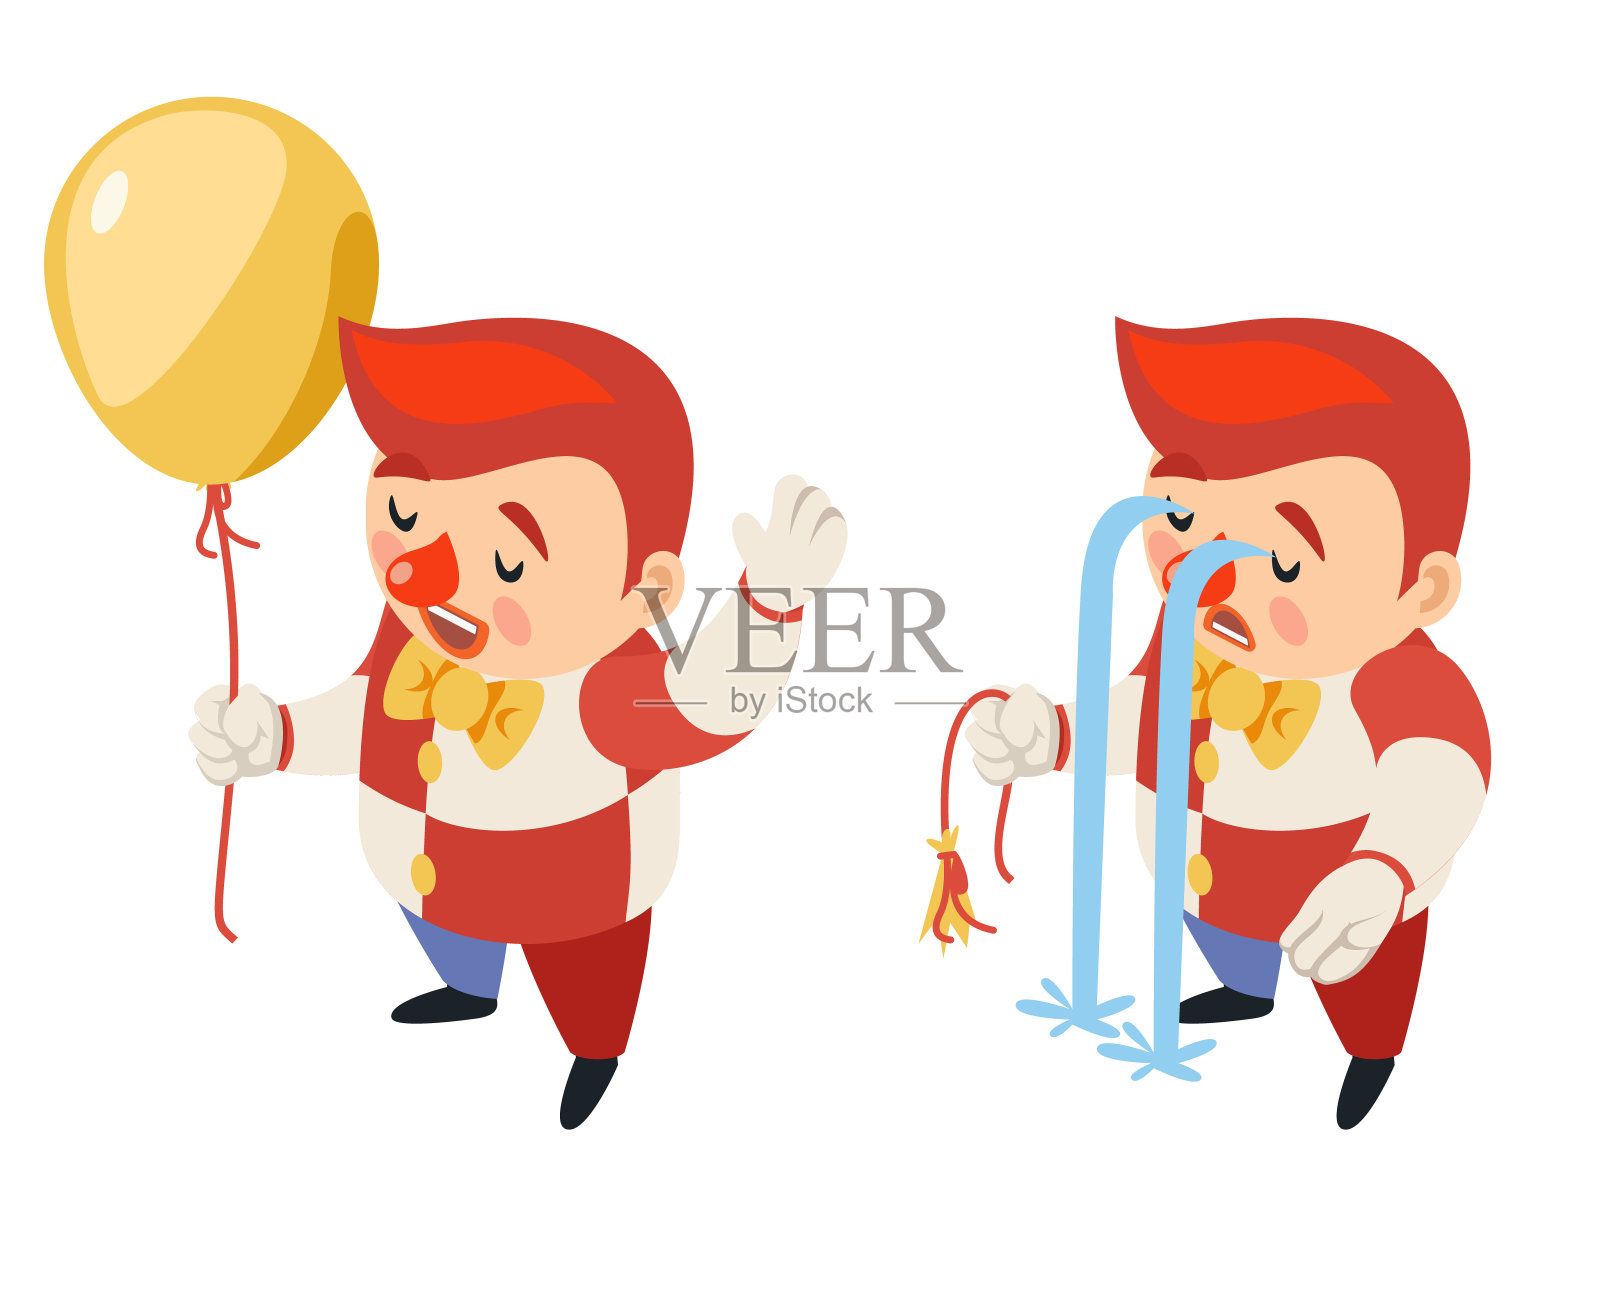 爆裂的气球等角的马戏团派对有趣的悲伤的狂欢节眼泪河小丑滑稽的哭爆炸的表演人物图标孤立的3d平面设计矢量插图插画图片素材